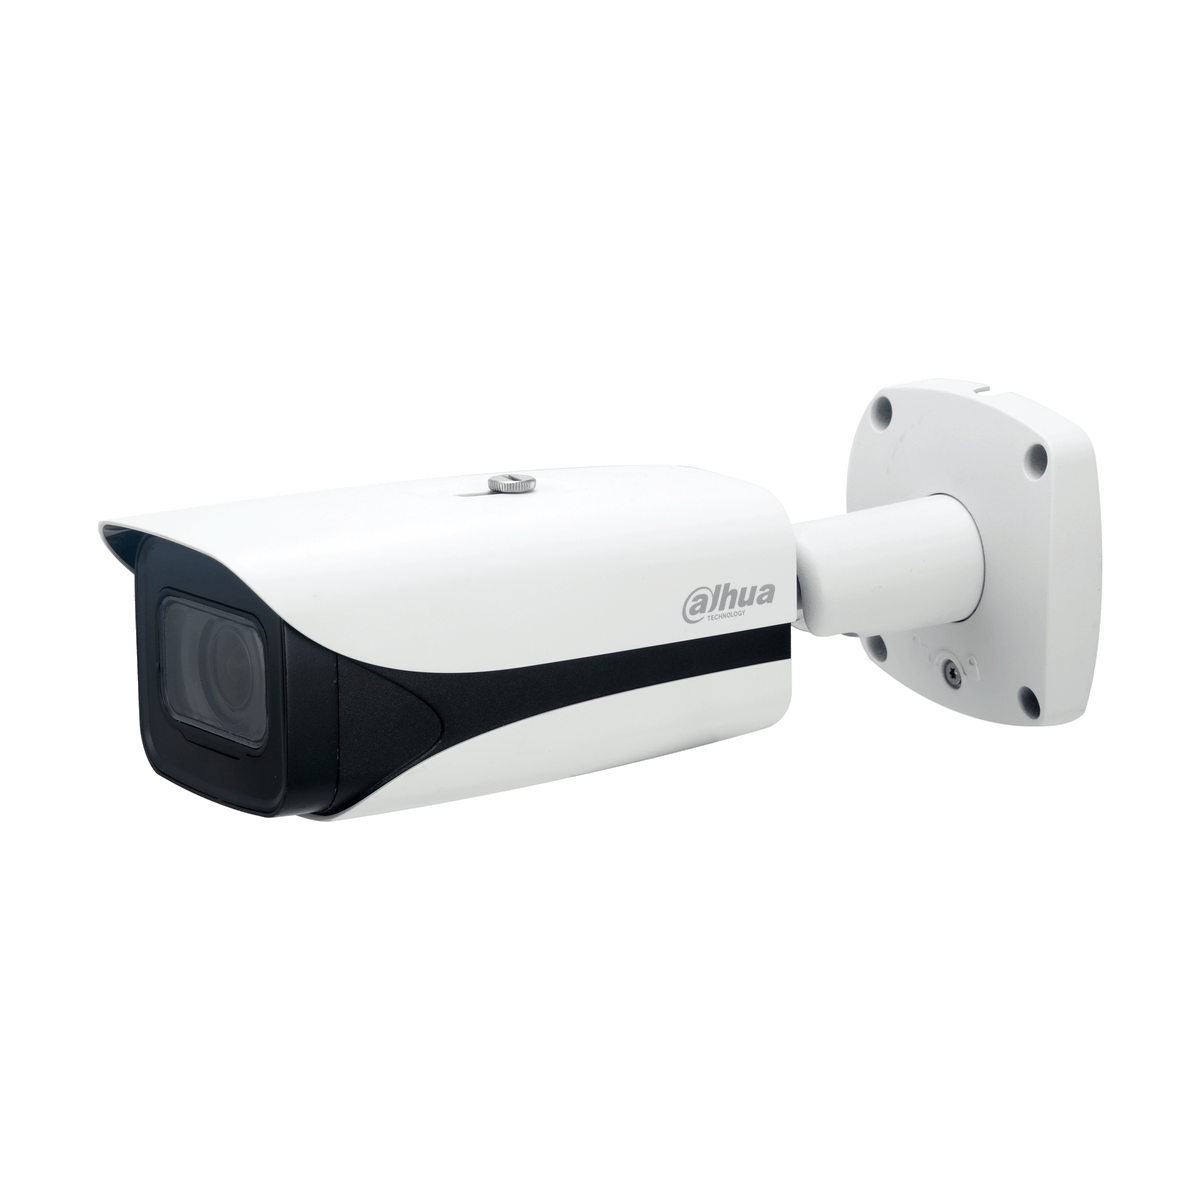 DAHUA IPC-HFW5541E-ZE(forUruguay) 5MP IR Vari-focal Bullet WizMind Network Camera